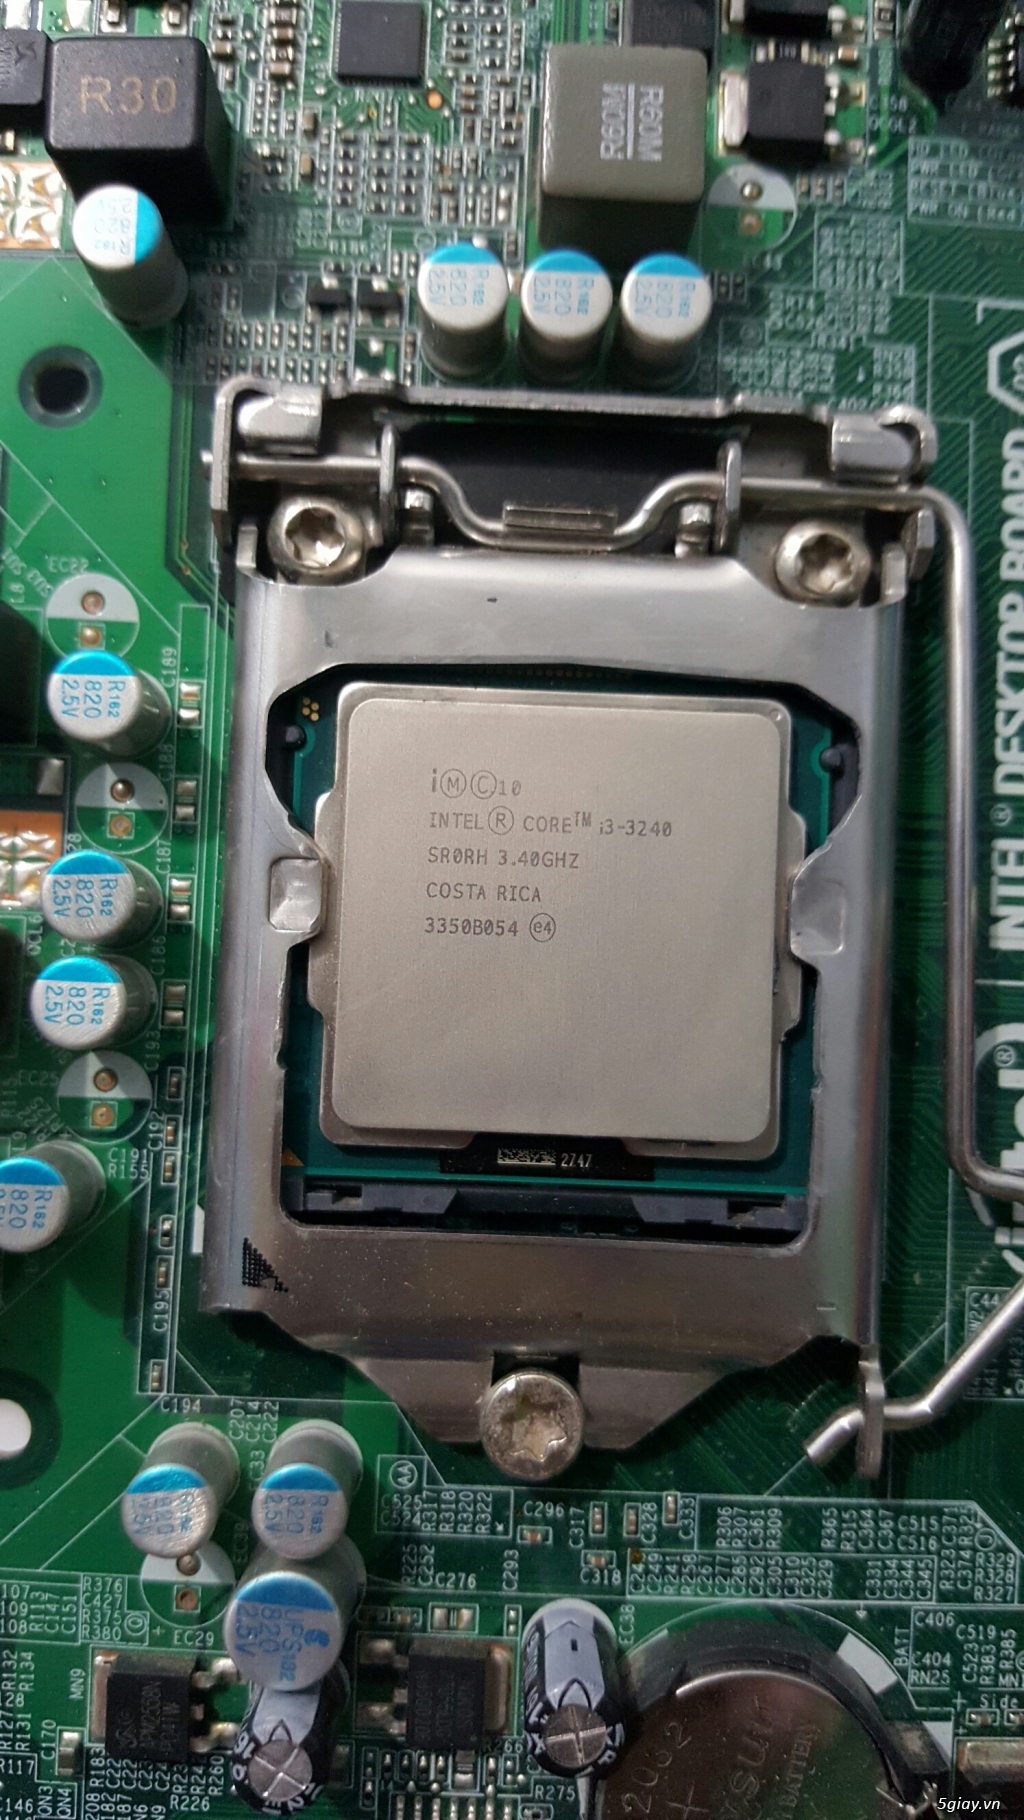 Thanh lý Main Intel H61 + CPU i3 - 3240 - Đang chạy tốt - 2